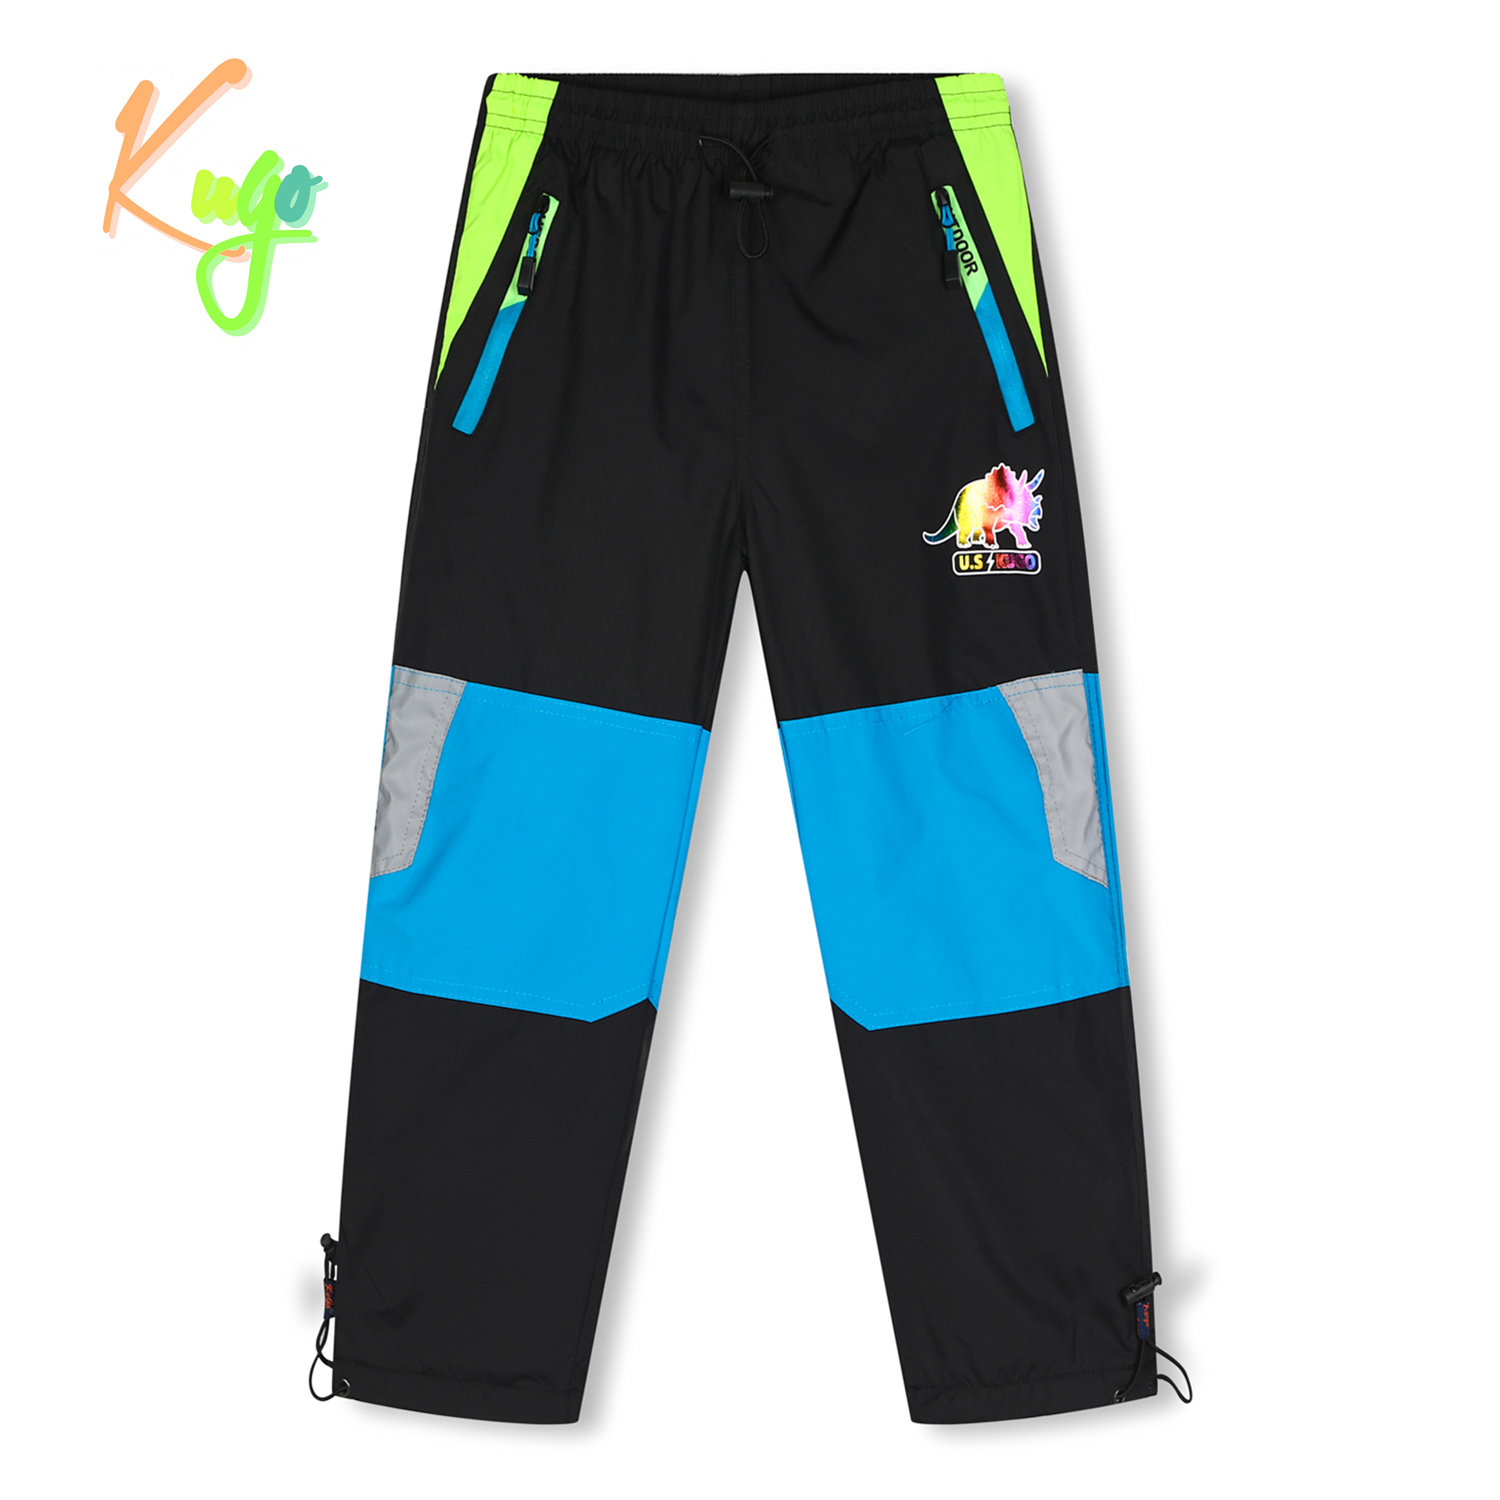 Chlapecké šusťákové kalhoty, zateplené - KUGO DK7128, černá Barva: Černá, Velikost: 104